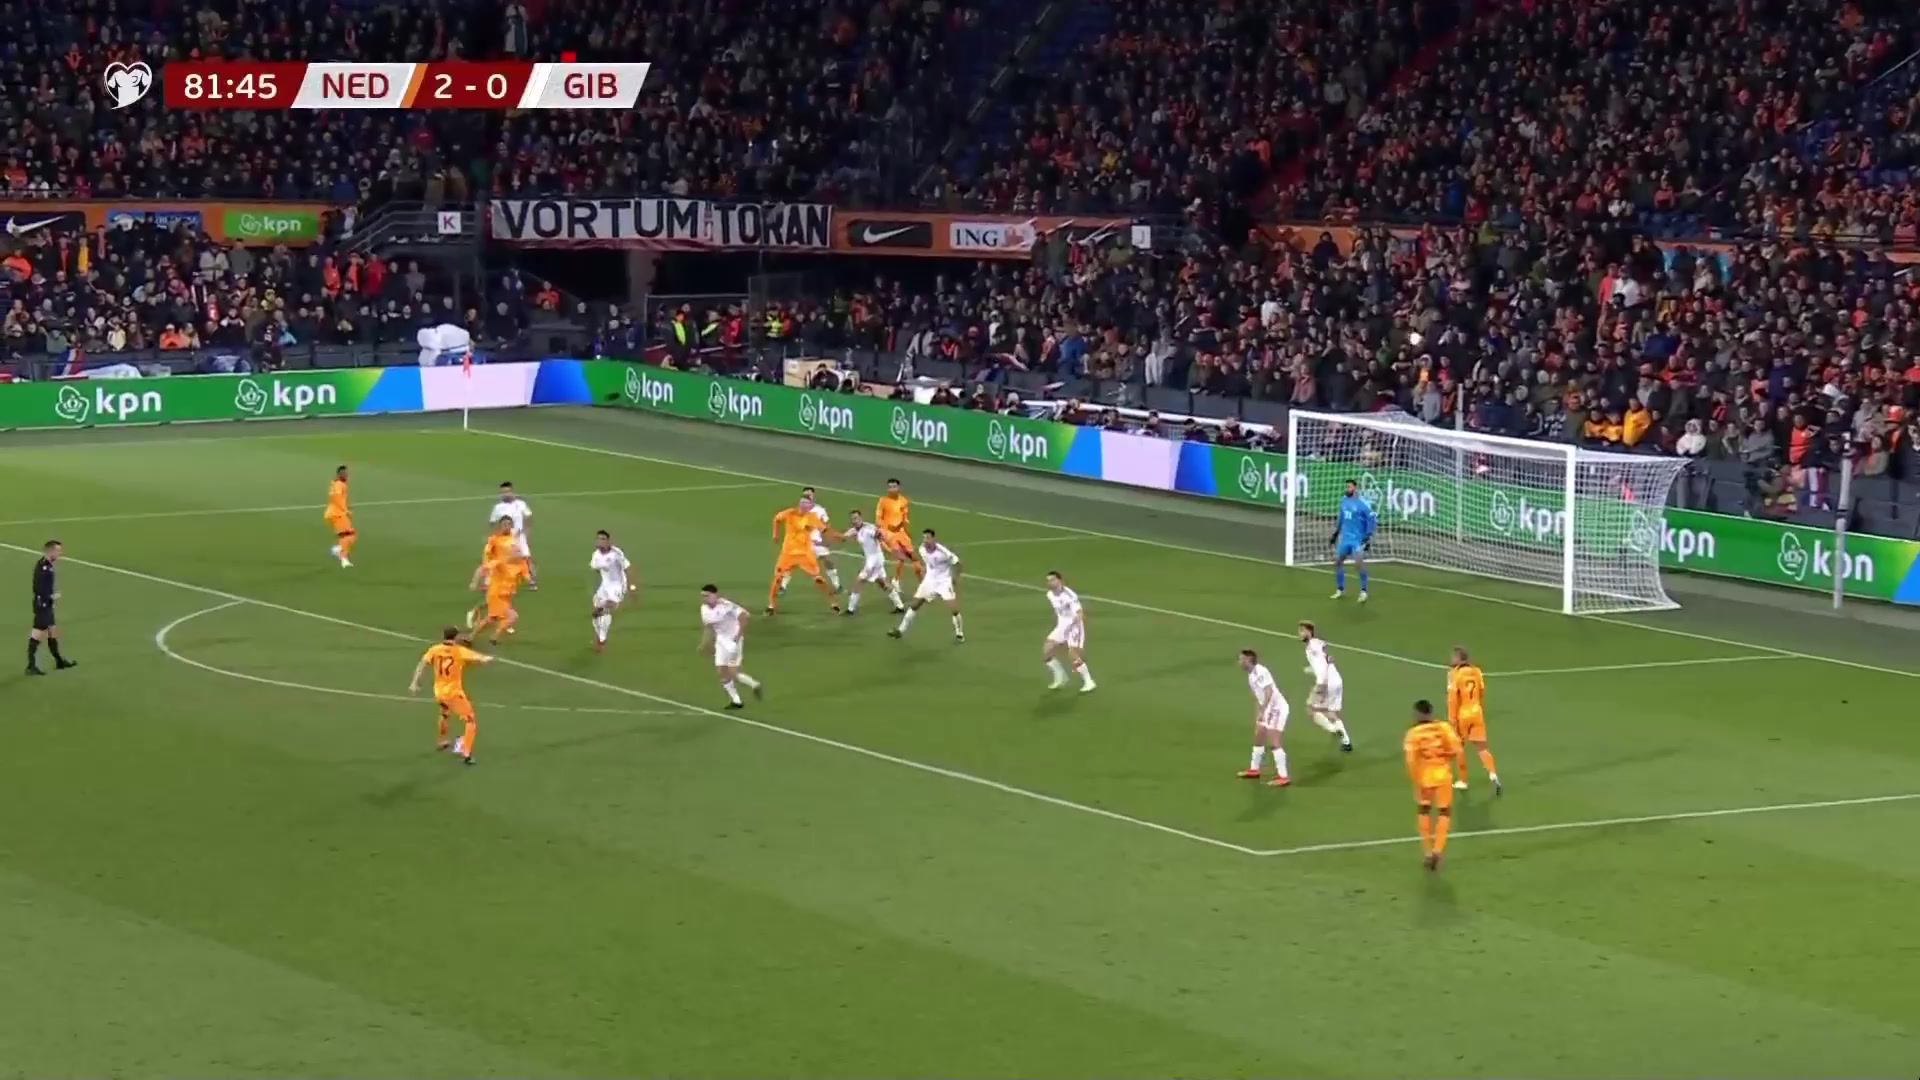 荷兰3-0领先！阿克远射，皮球发生折射入网